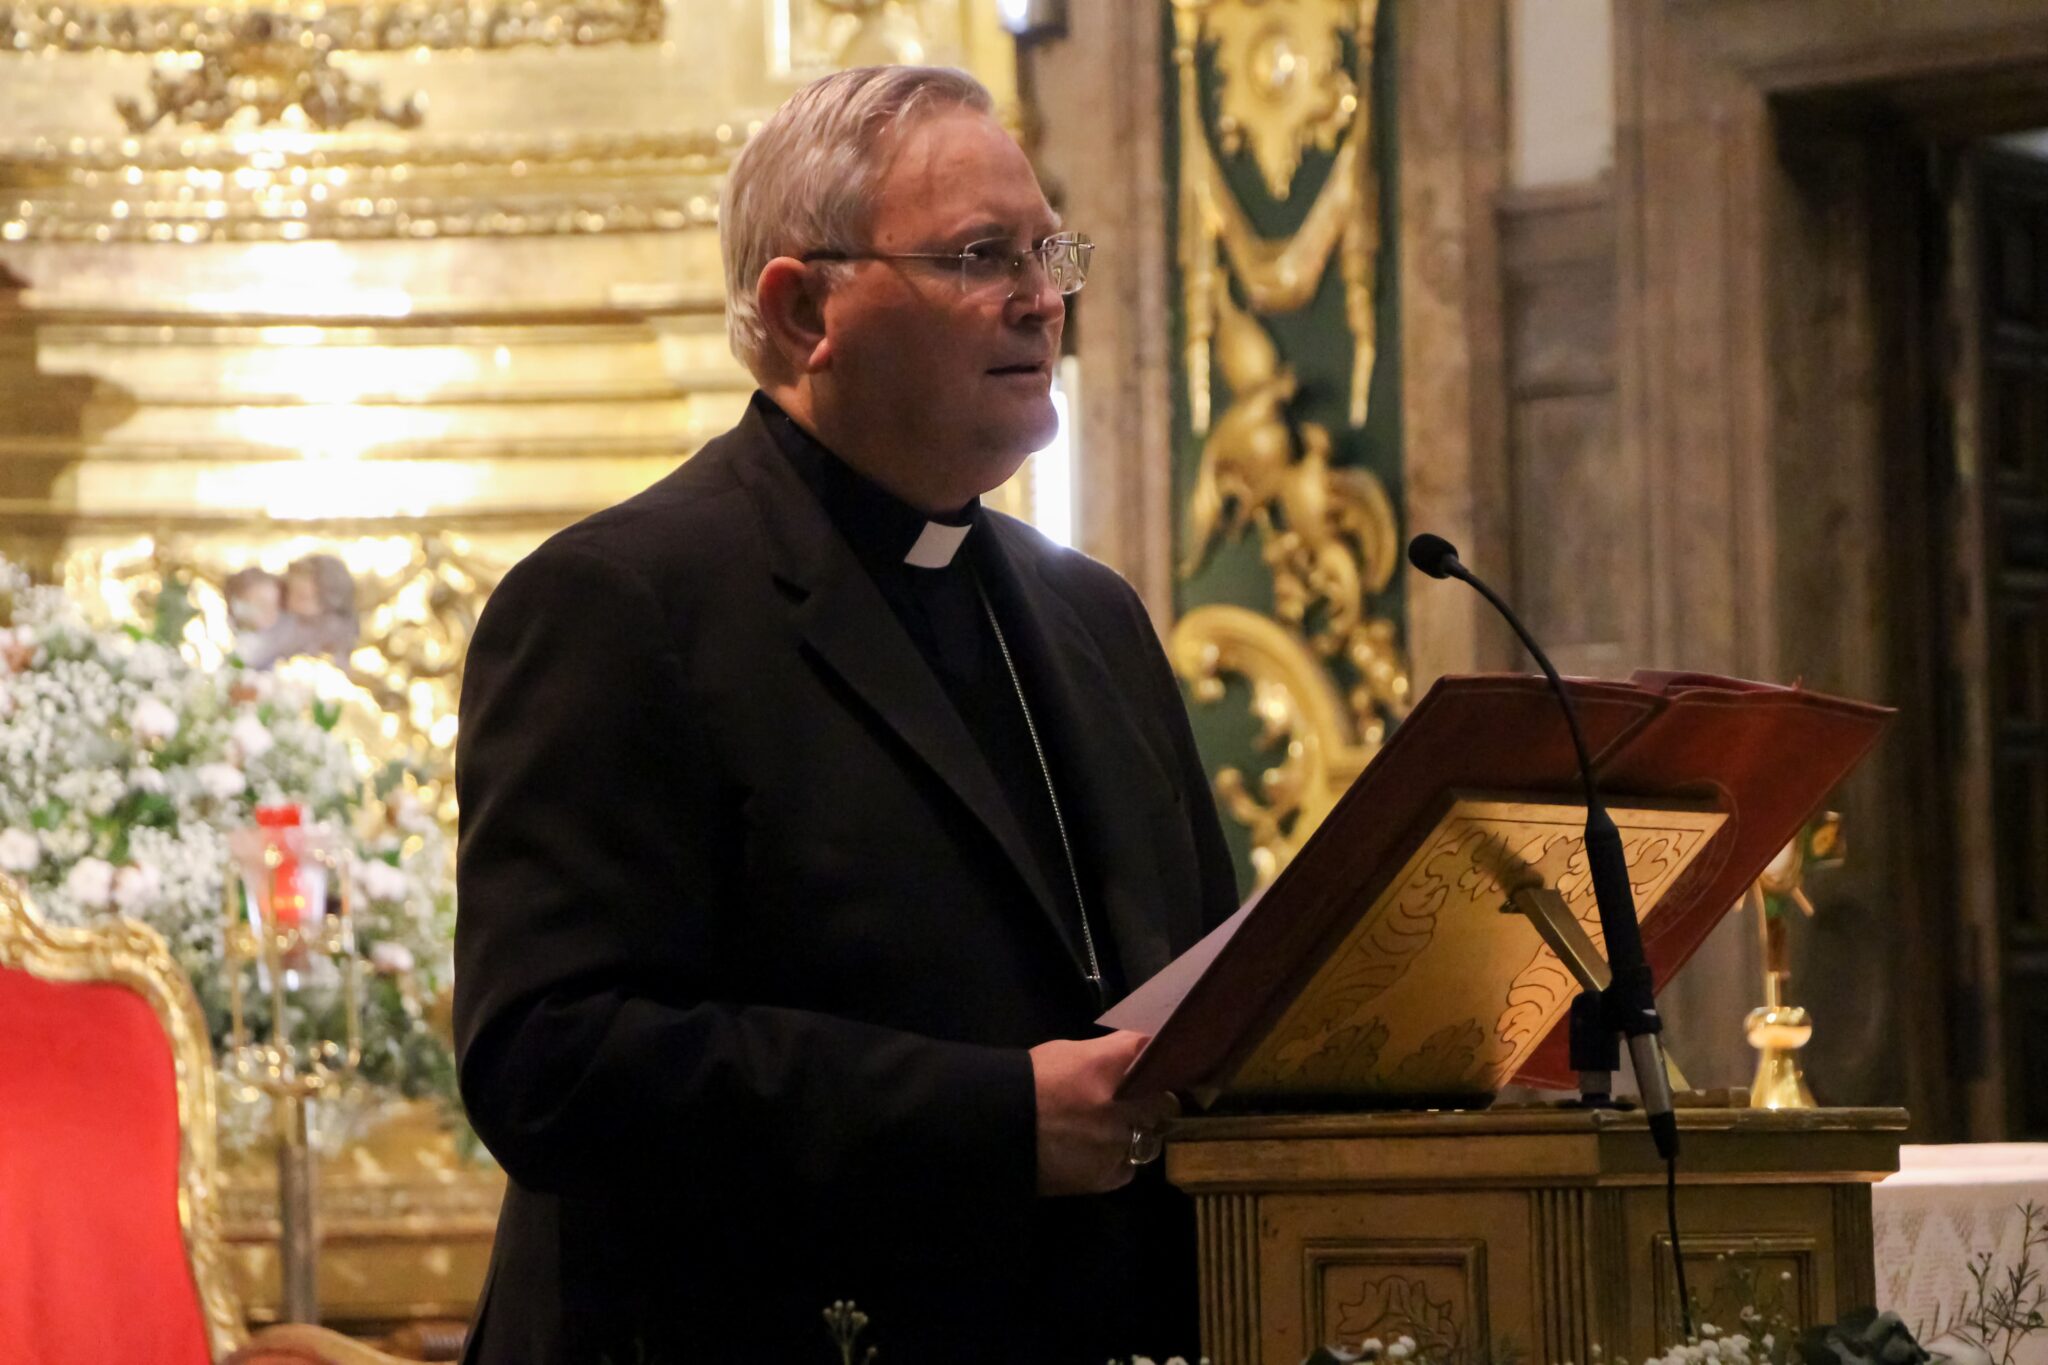 El obispo decreta la suspensión de todas las celebraciones litúrgicas en la Región